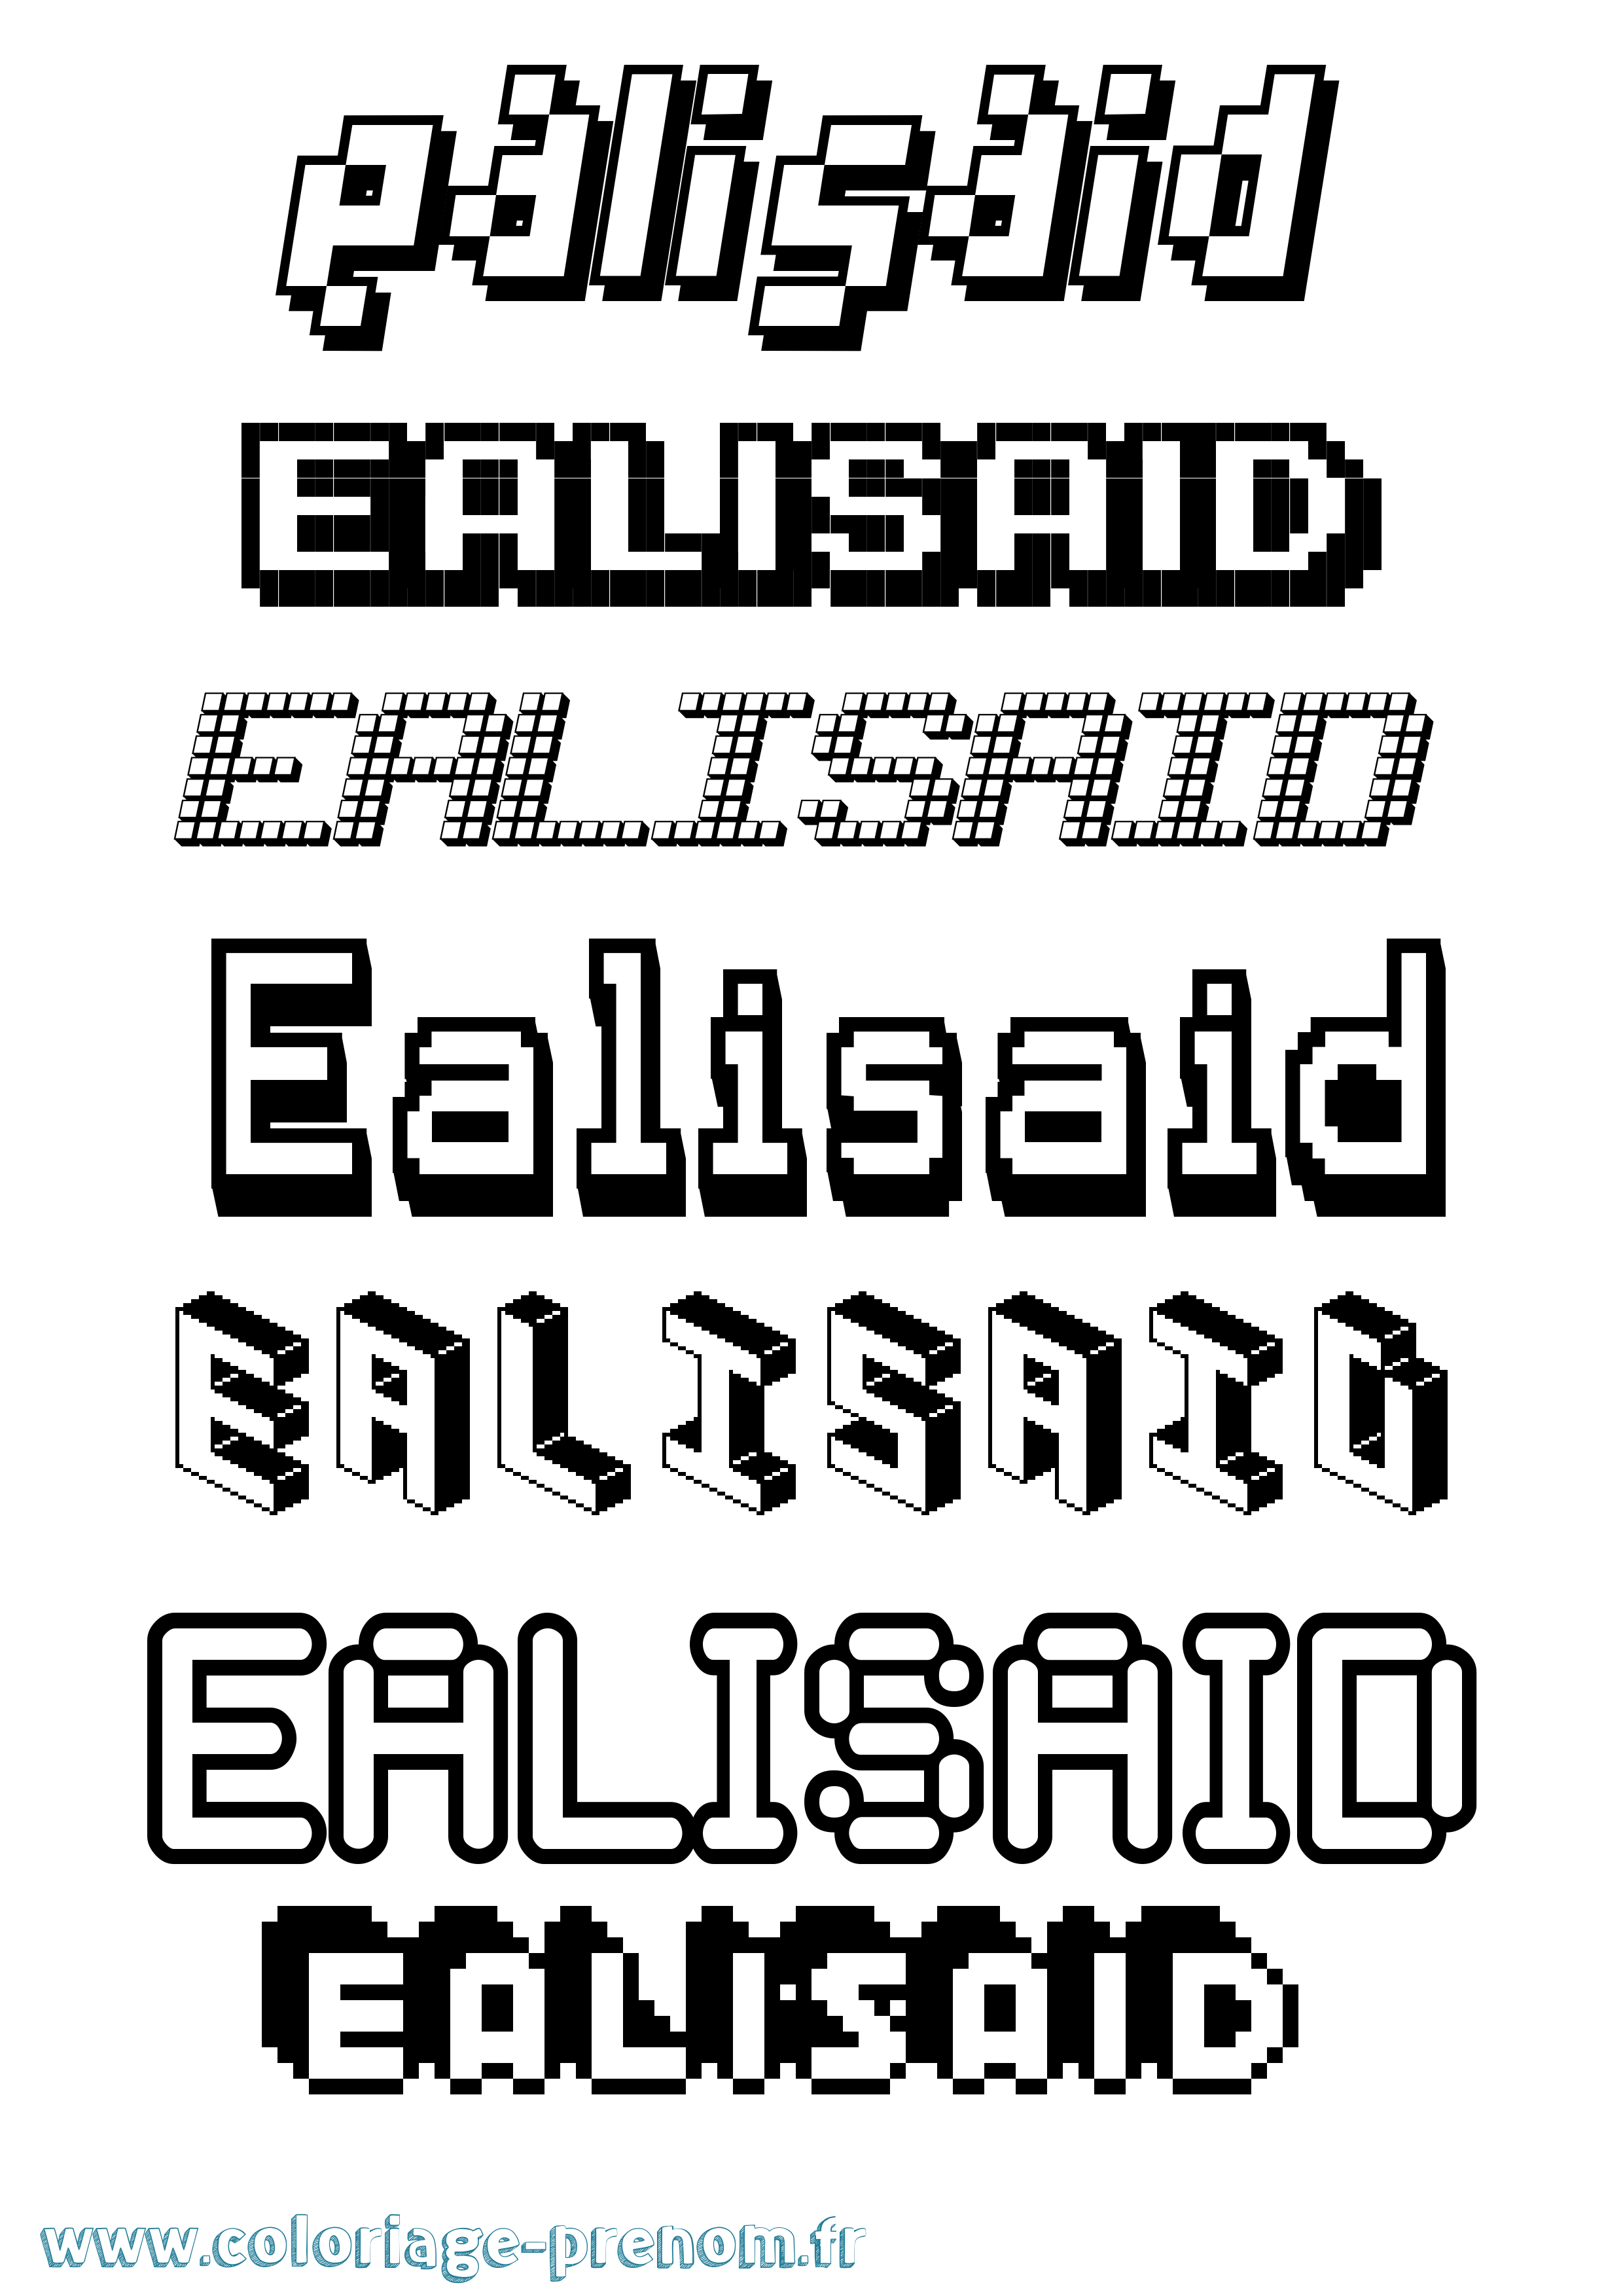 Coloriage prénom Ealisaid Pixel